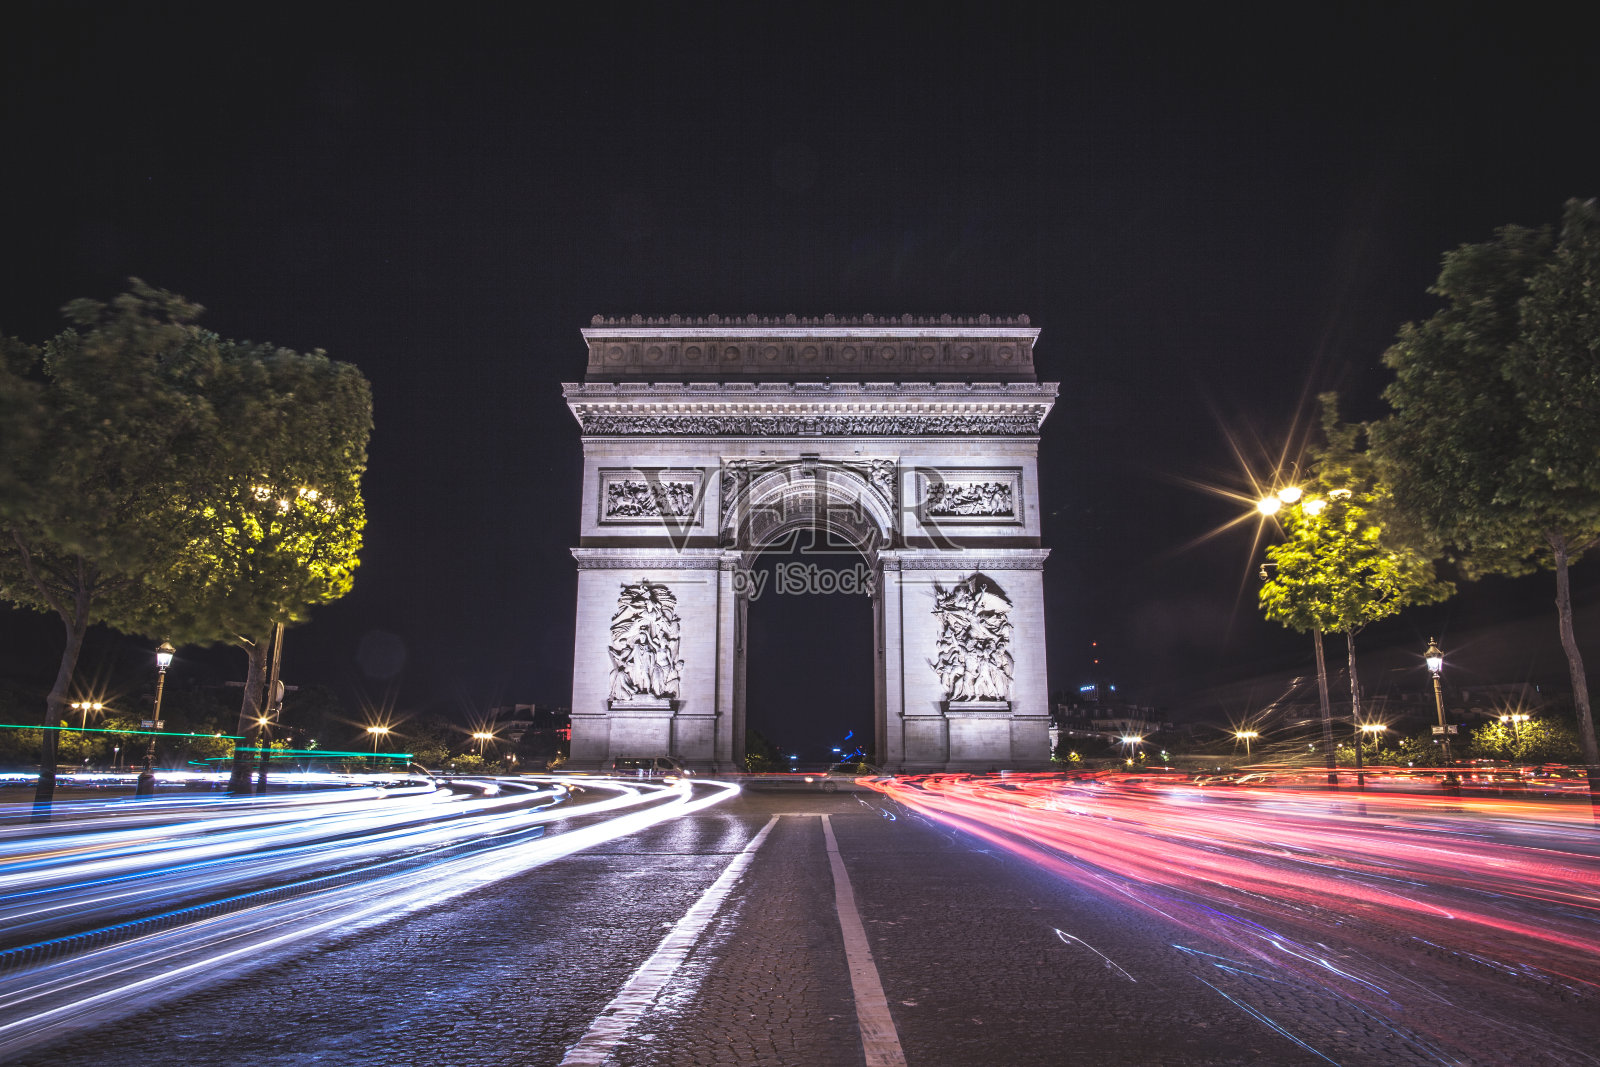 夜晚的巴黎:凯旋门照片摄影图片